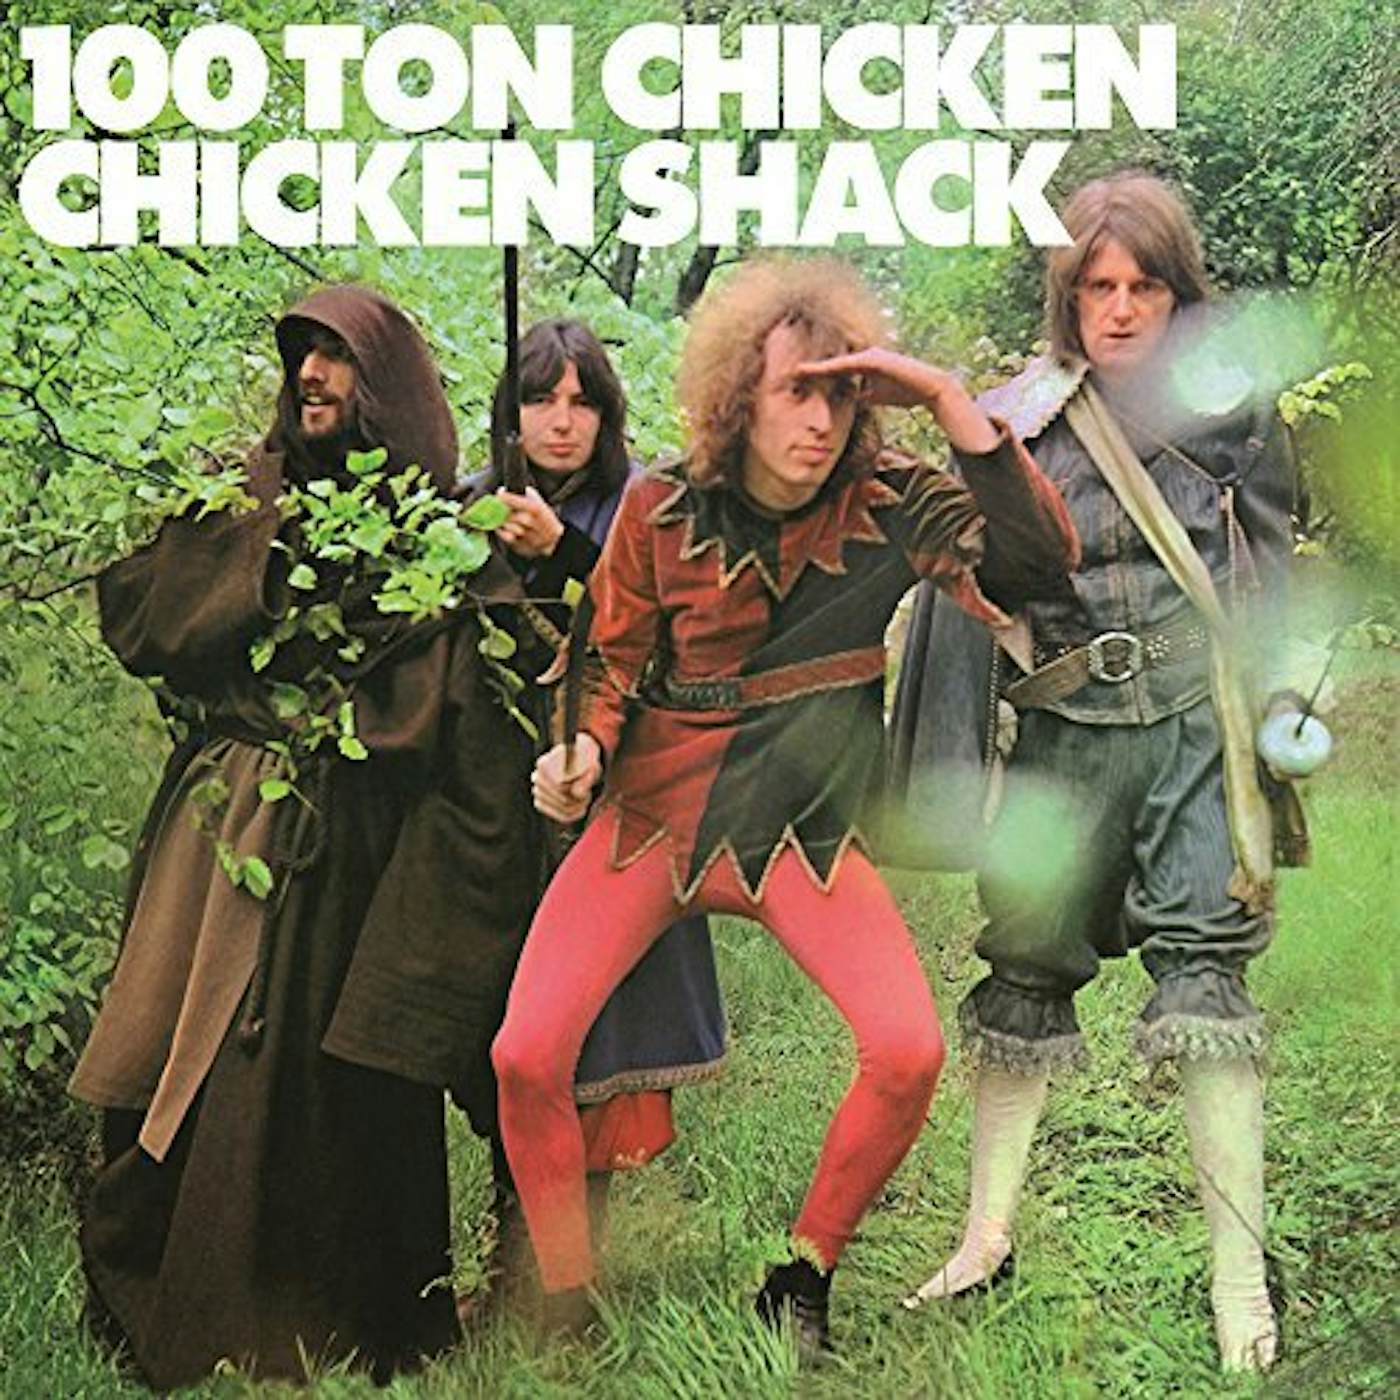 Chicken Shack 100 Ton Chicken Vinyl Record